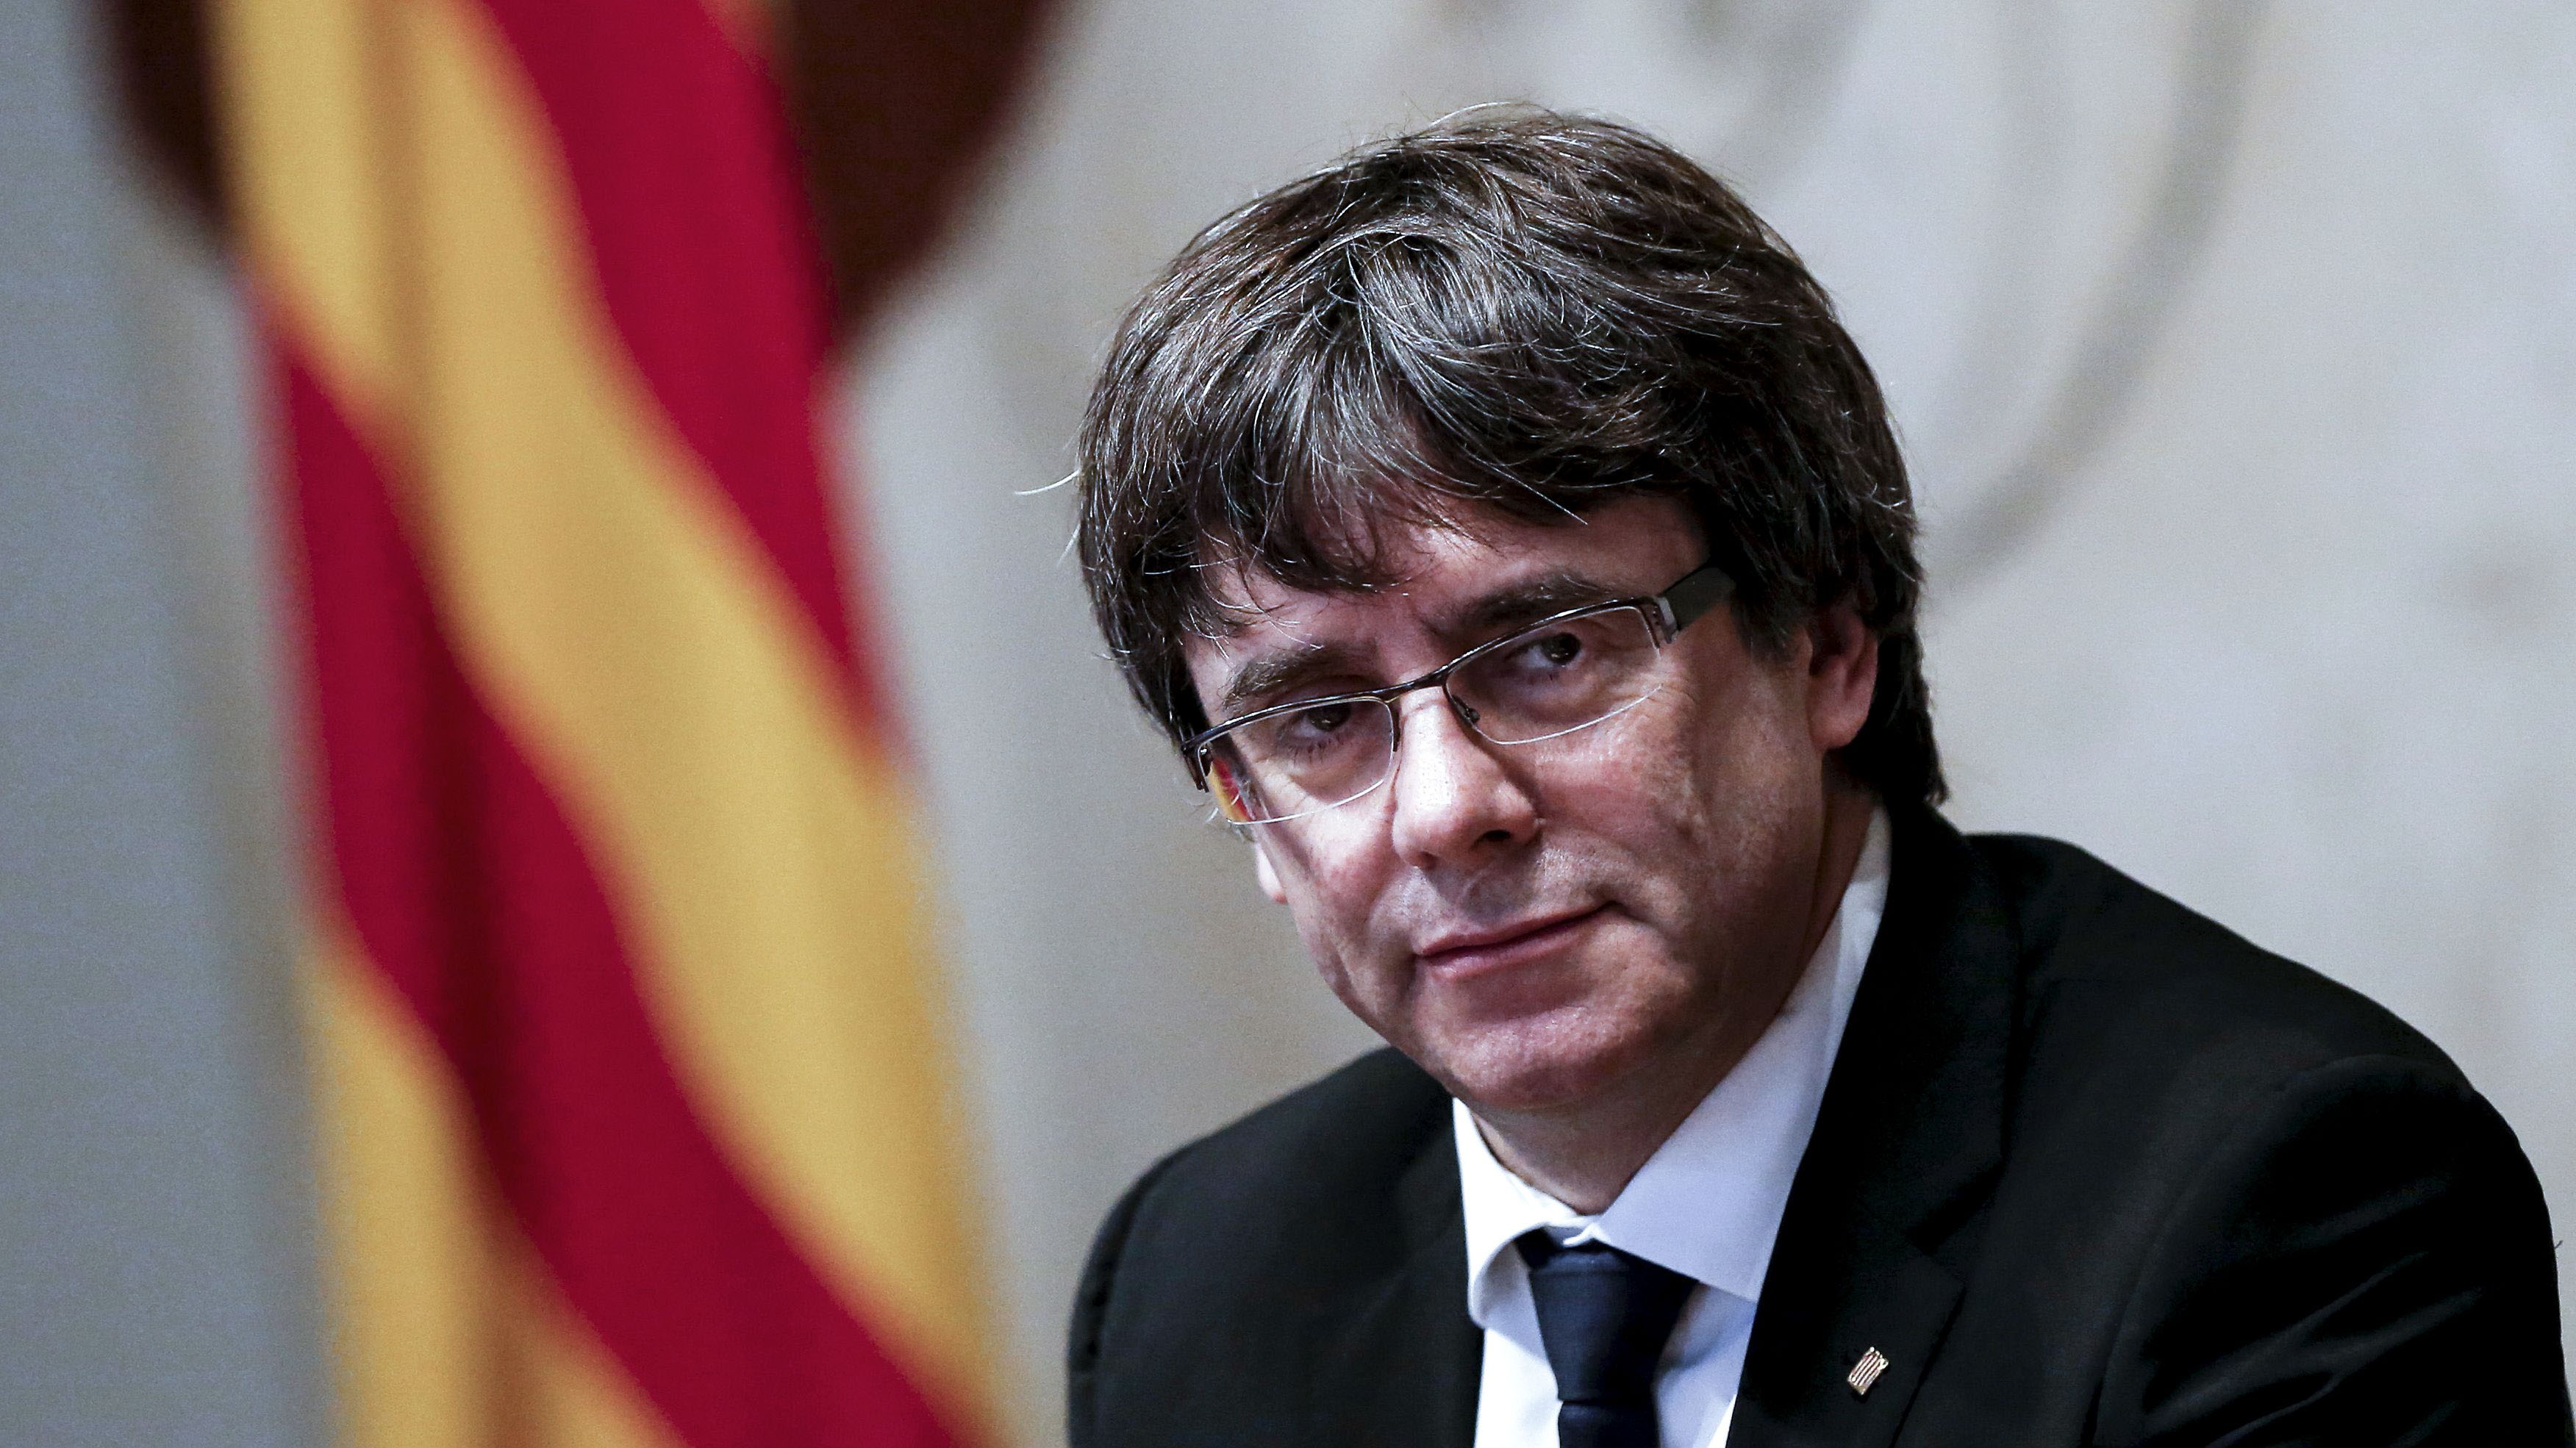 Futuro de Cataluña: ¿Cuáles son las posibilidades de que Puigdemont llegue a la presidencia nuevamente?